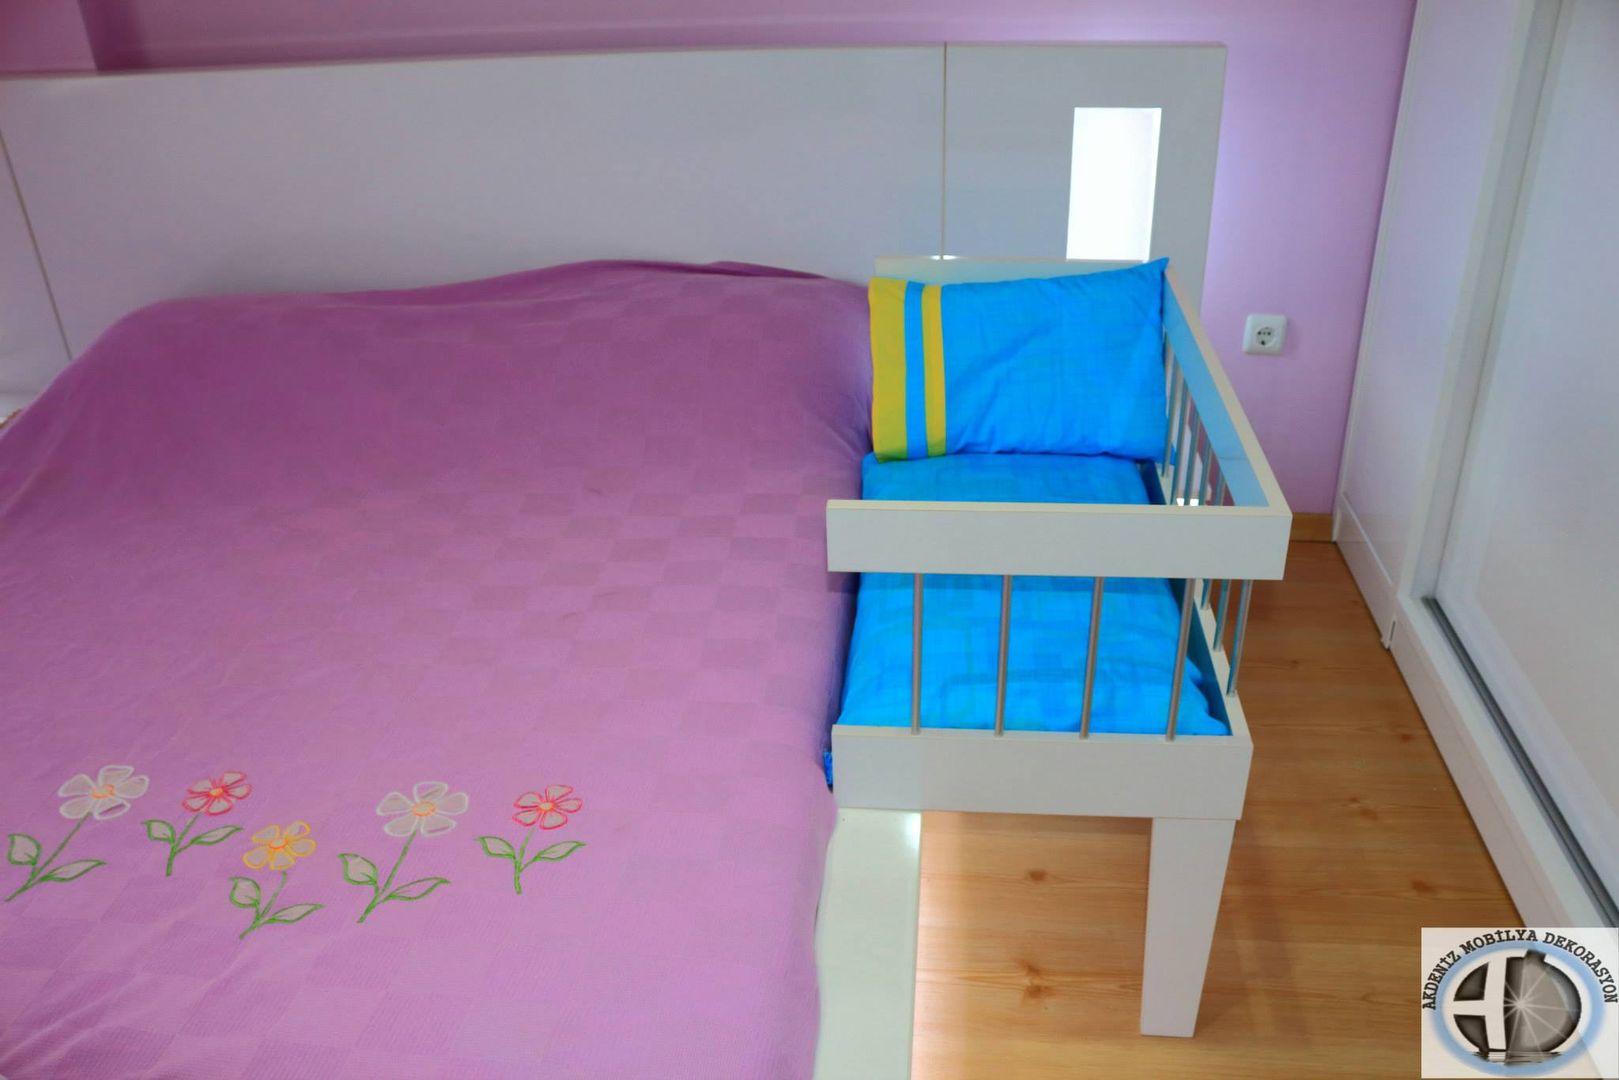 Anne Yanı Beşiği, Akdeniz Dekorasyon Akdeniz Dekorasyon 嬰兒房/兒童房 床具與床鋪